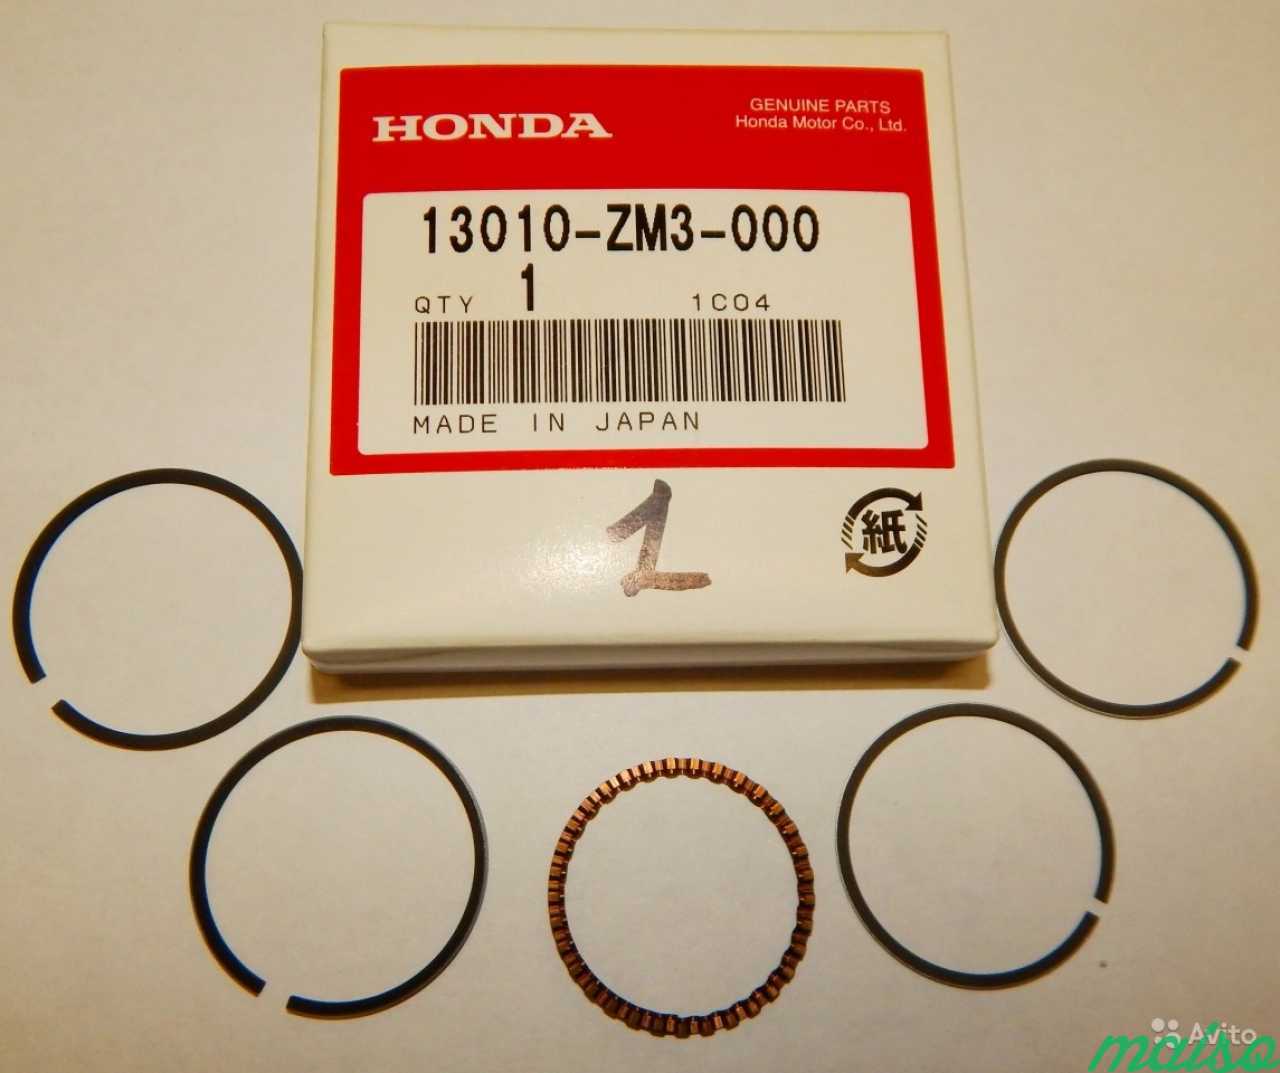 Поршневые кольца Хонда лид 50. Поршневые кольца Хонда лого 1.3. Кольца Хонда 13010-z6l-003 made in Japan. Кольца Хонда 13010-z6l-00 made in Japan.